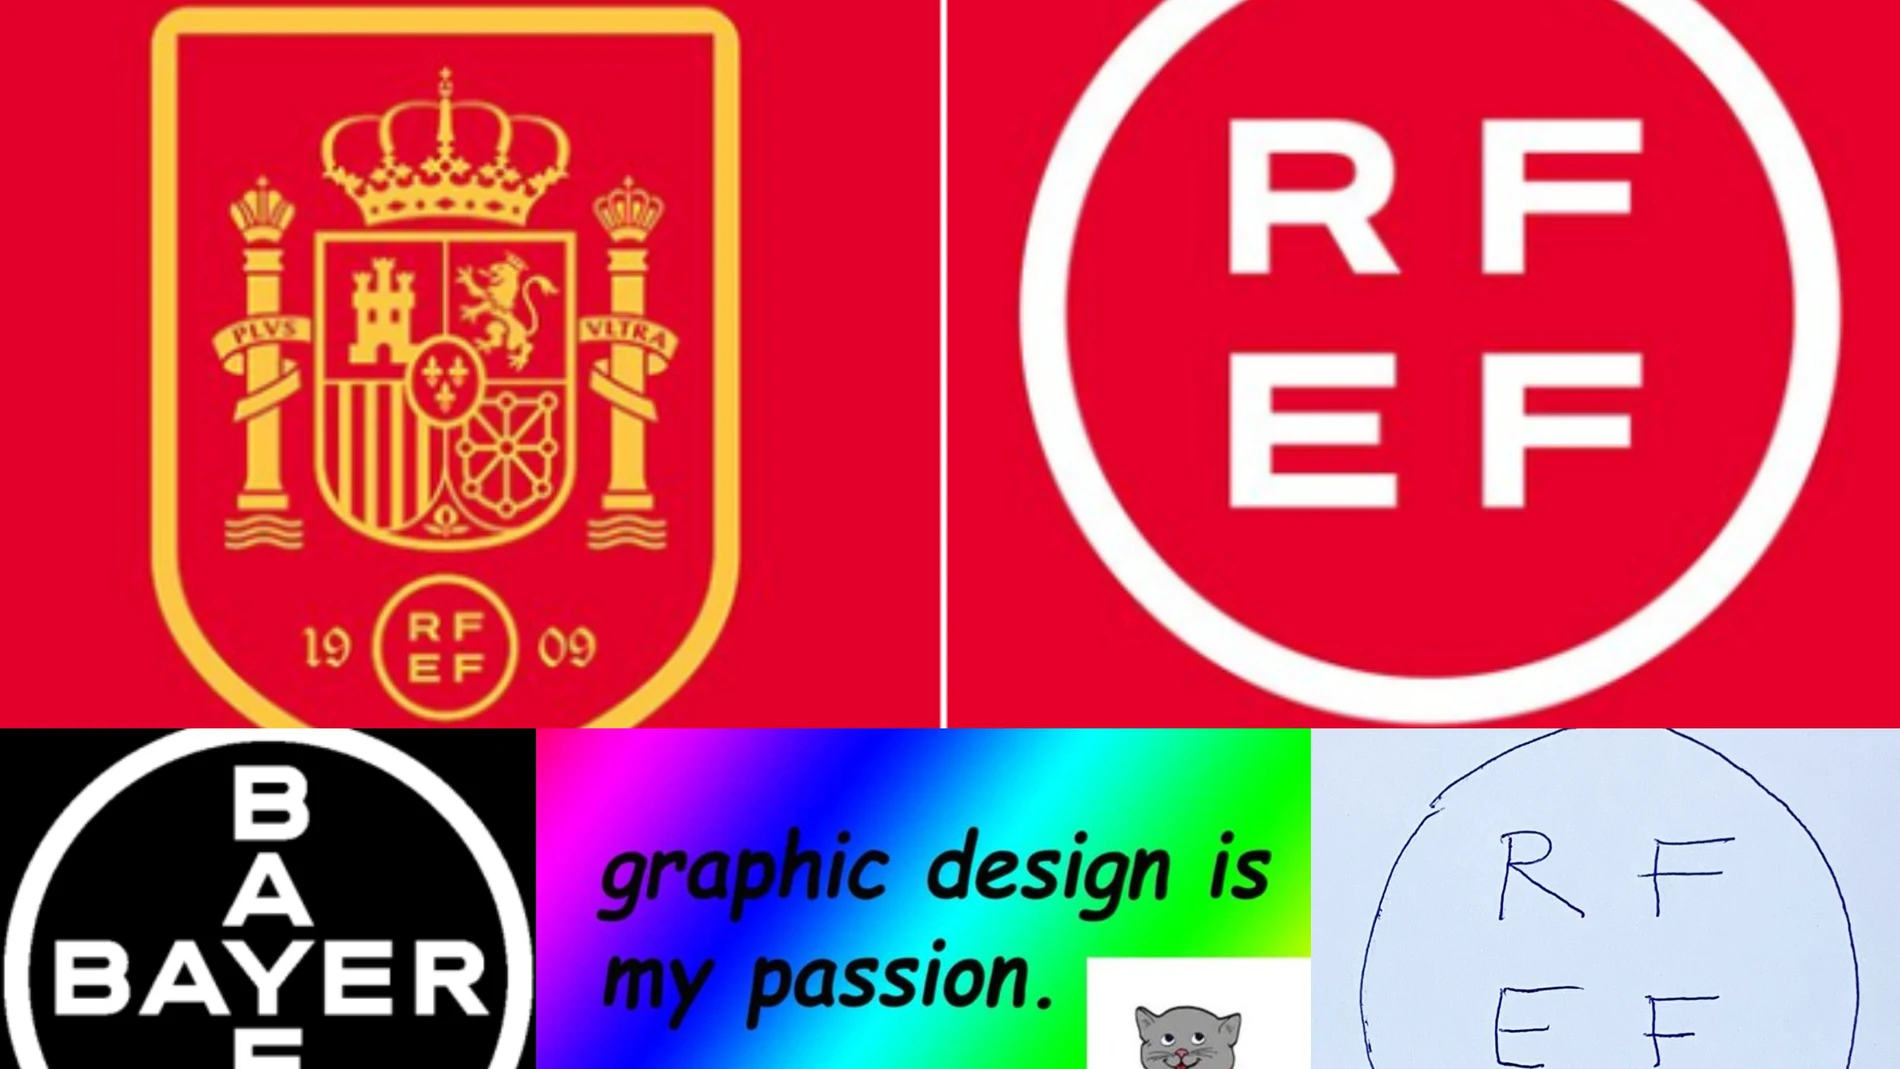 Los mejores memes del cambio de diseño del escudo de la selección española y el logo de la RFEF 